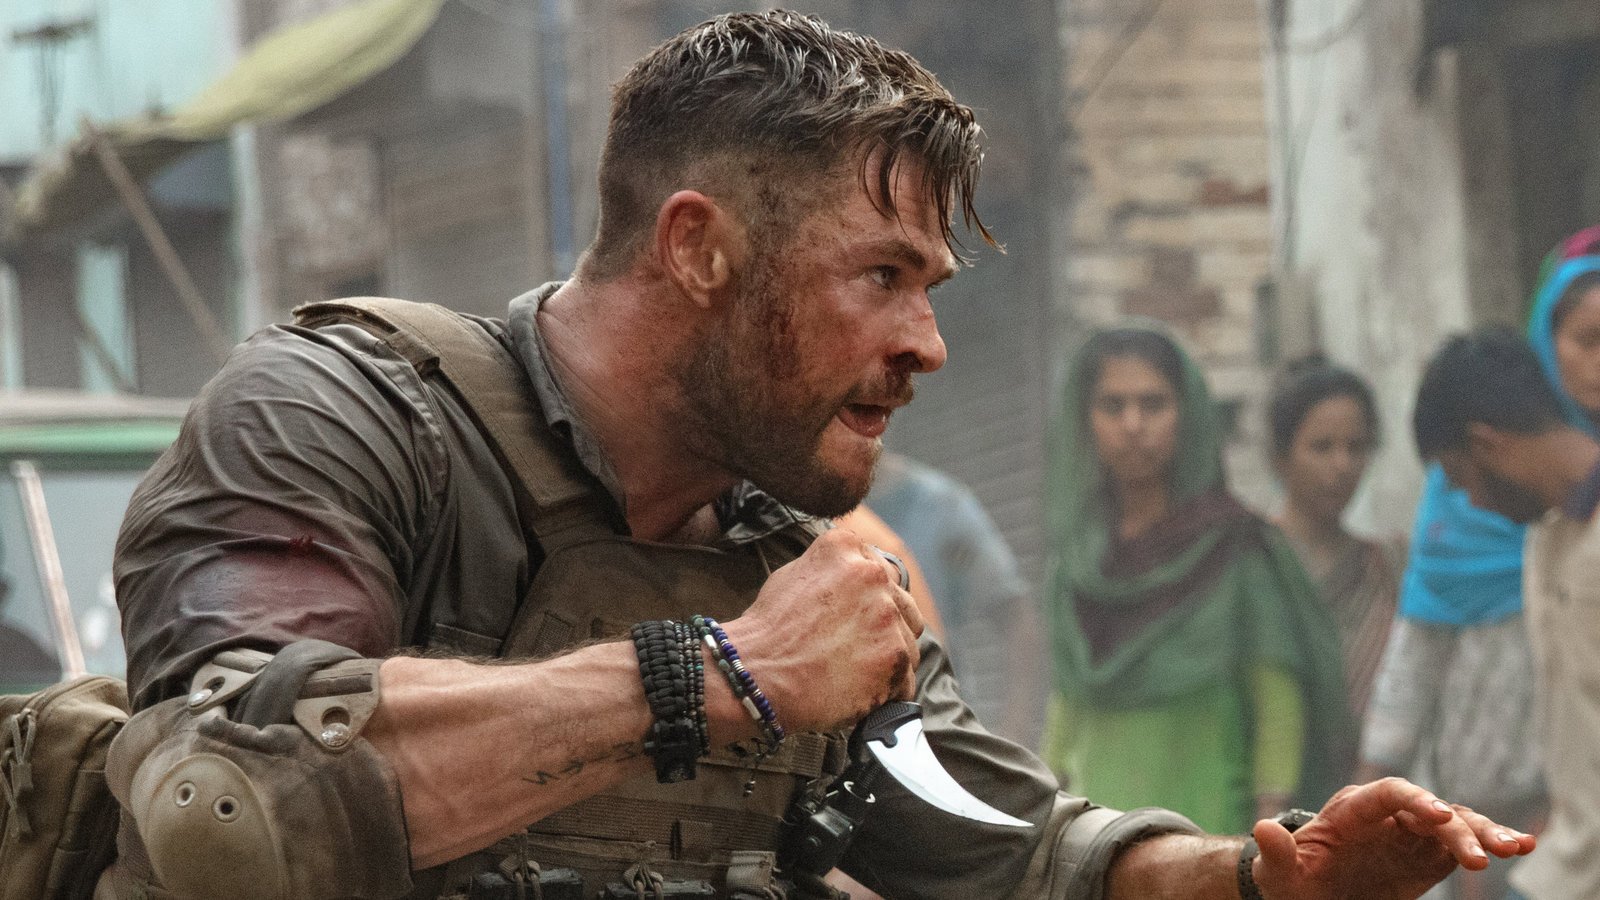 Resgate 2 | Chris Hemsworth reprisando seu papel como Tyler Raket na sequência na Netflix